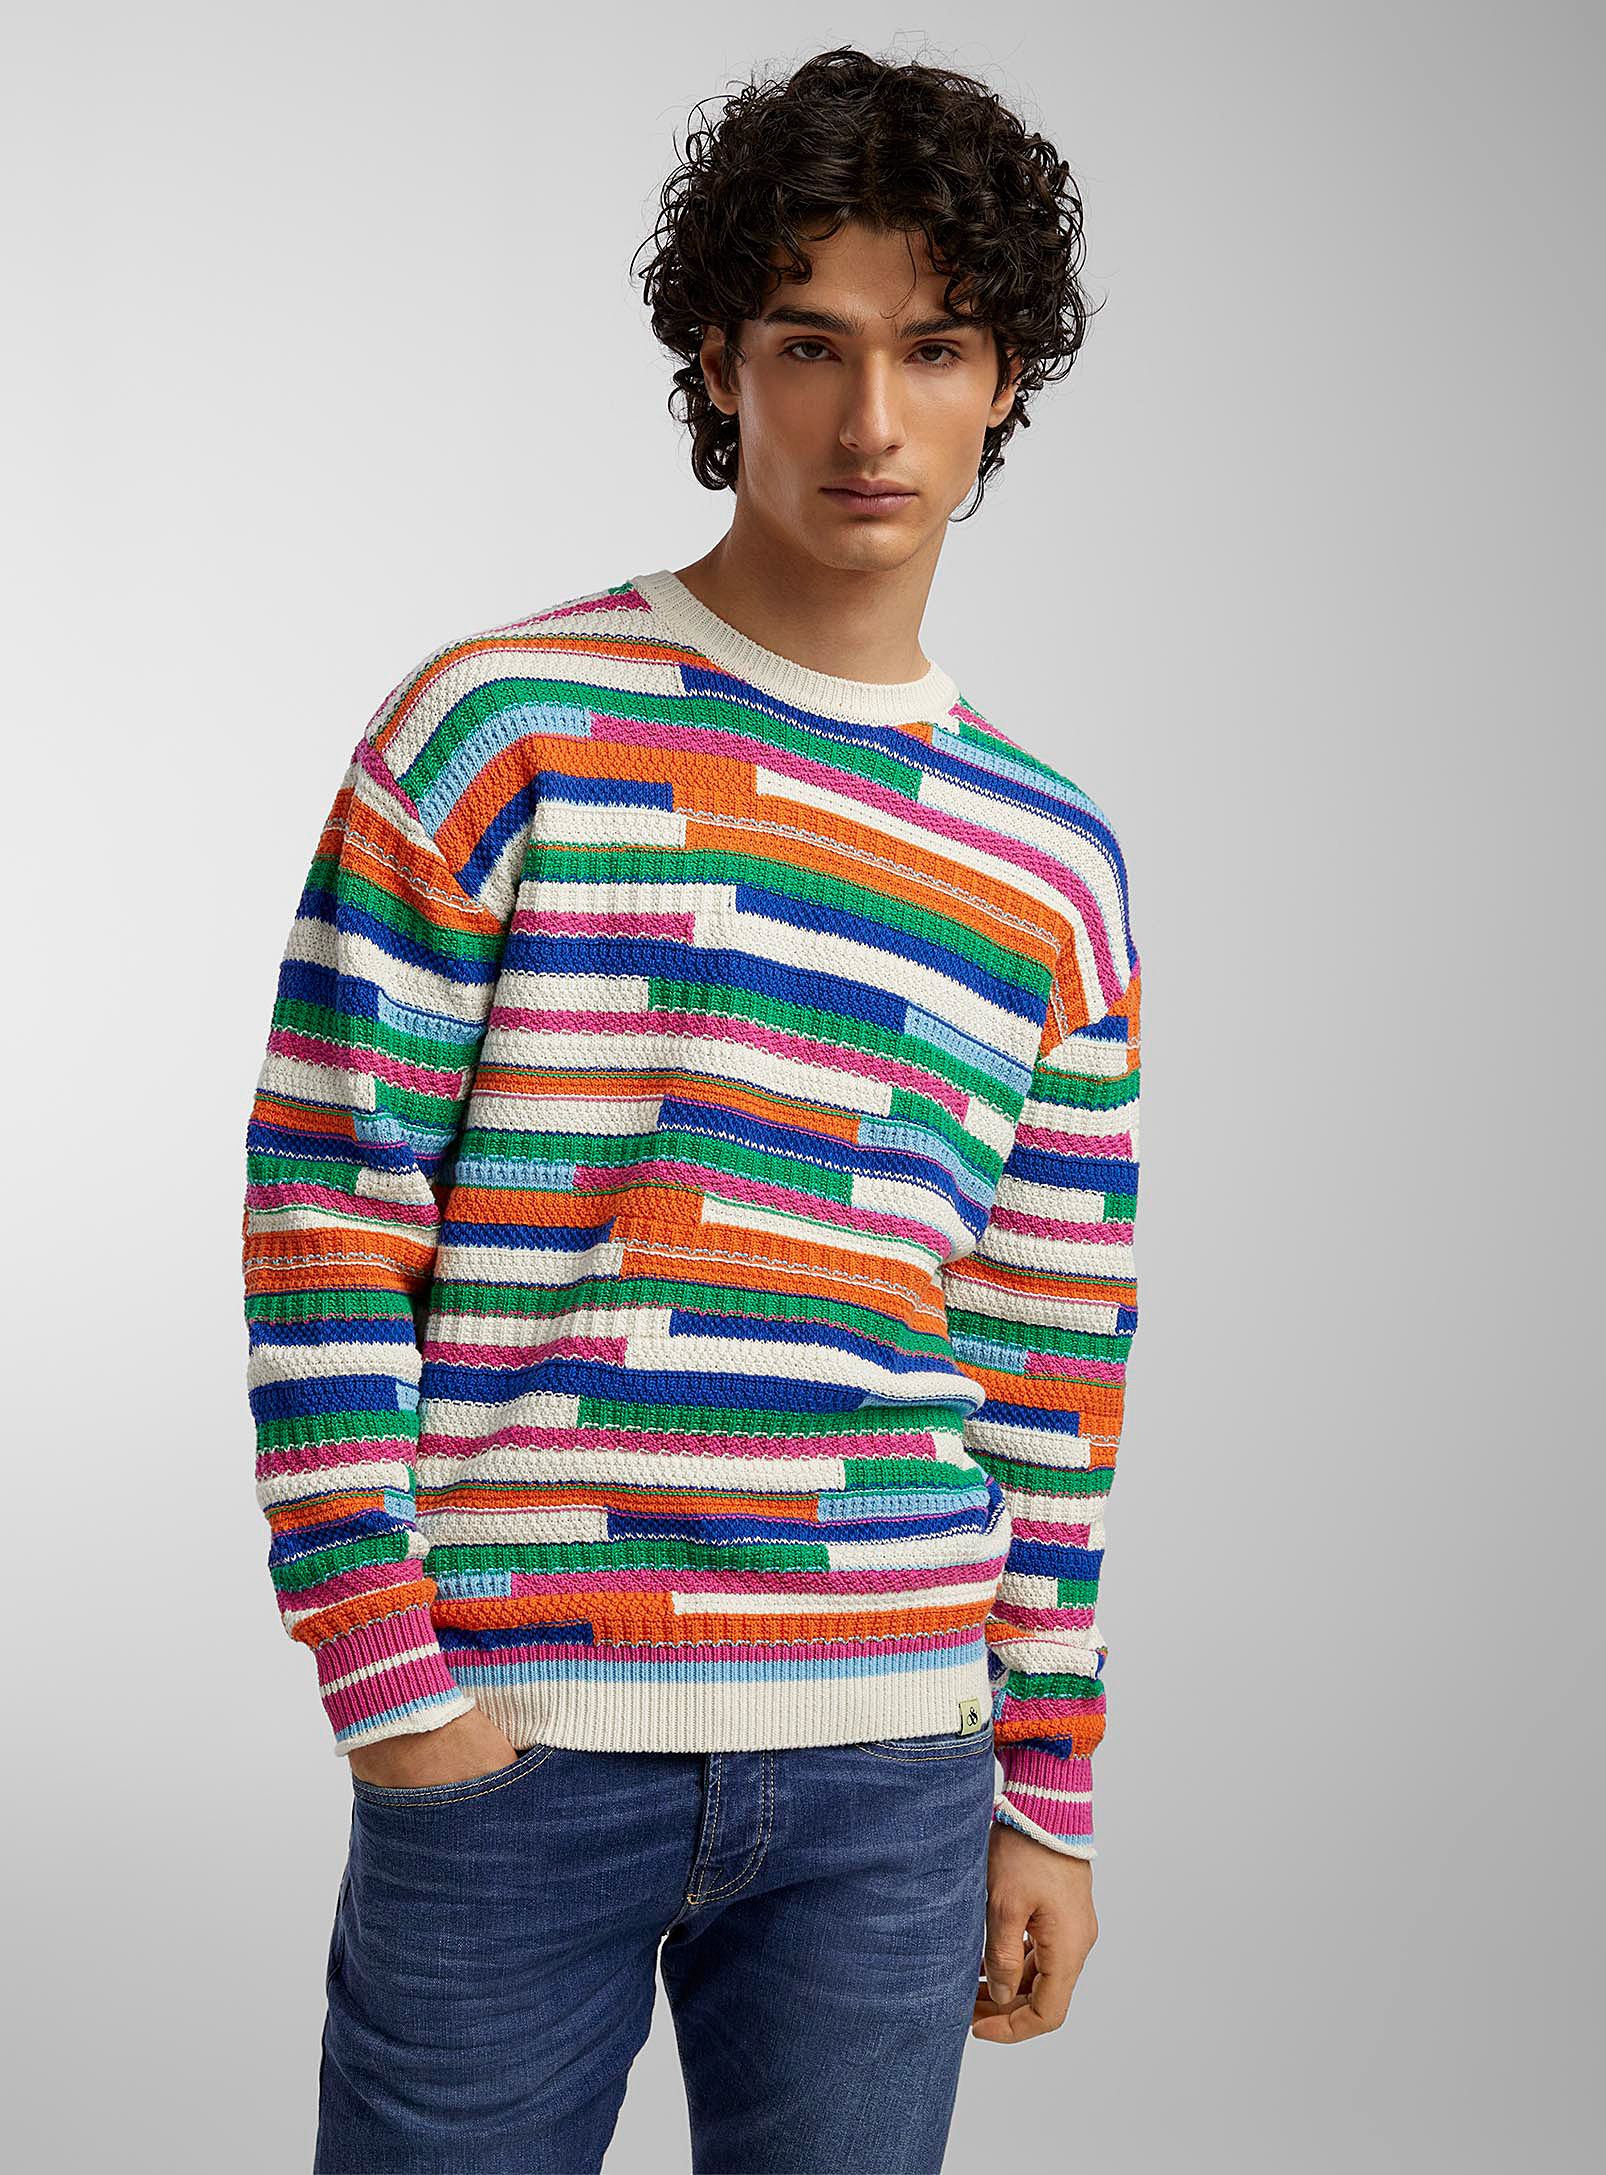 Scotch & Soda Colourful Mixed-stitch Sweater In Assorted